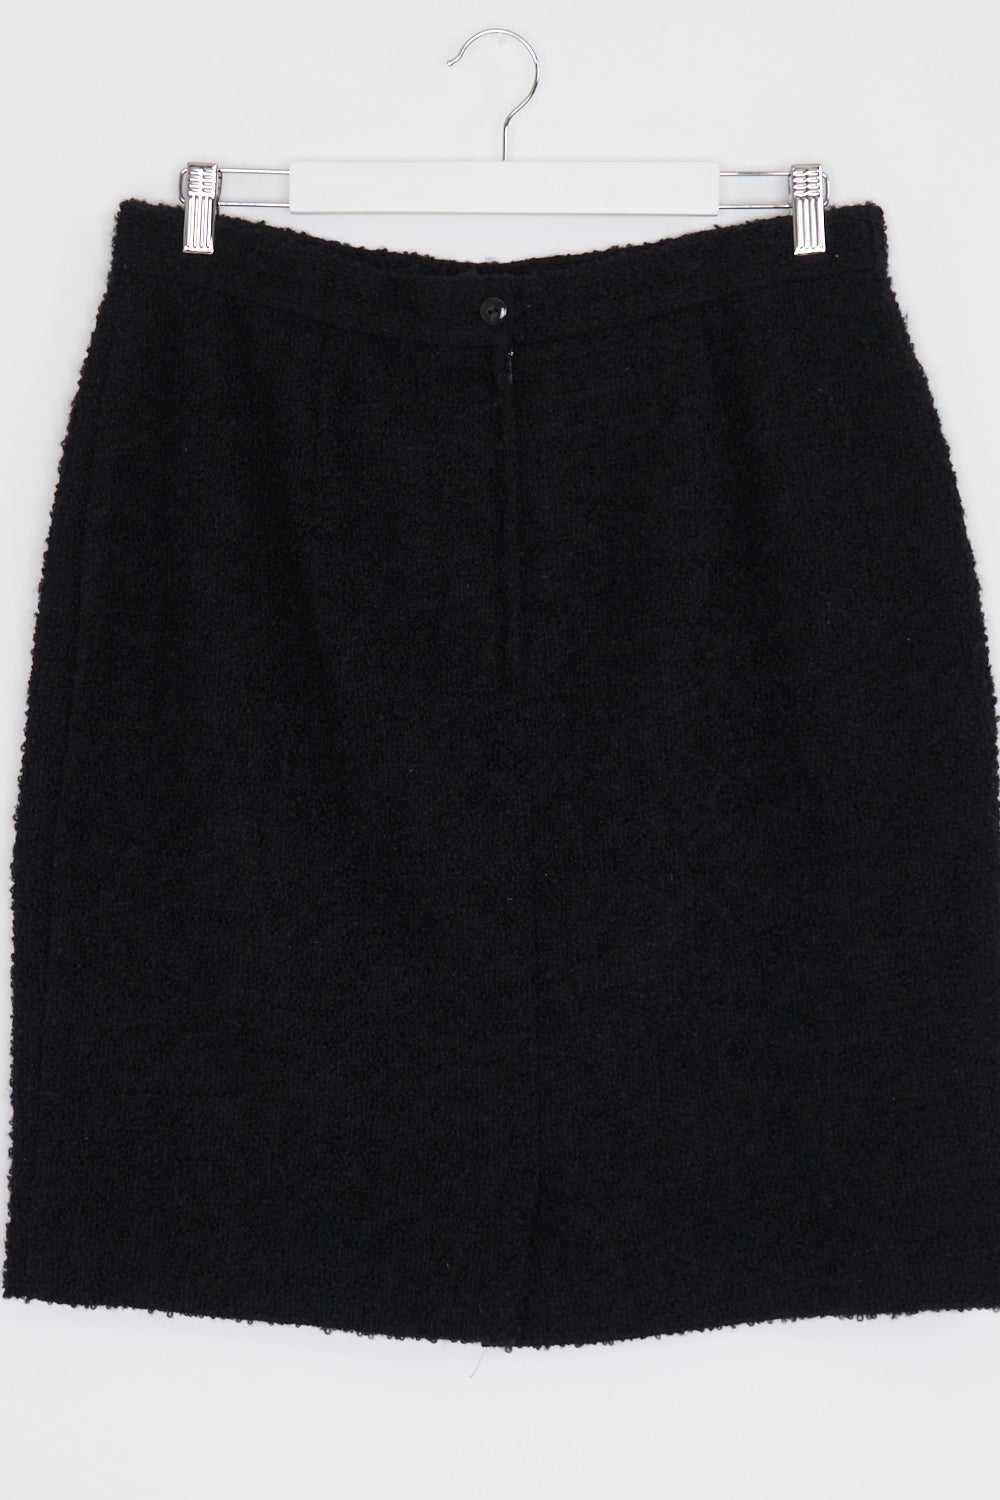 Sportscraft Petite Black Textured Wool Blend Skirt 16